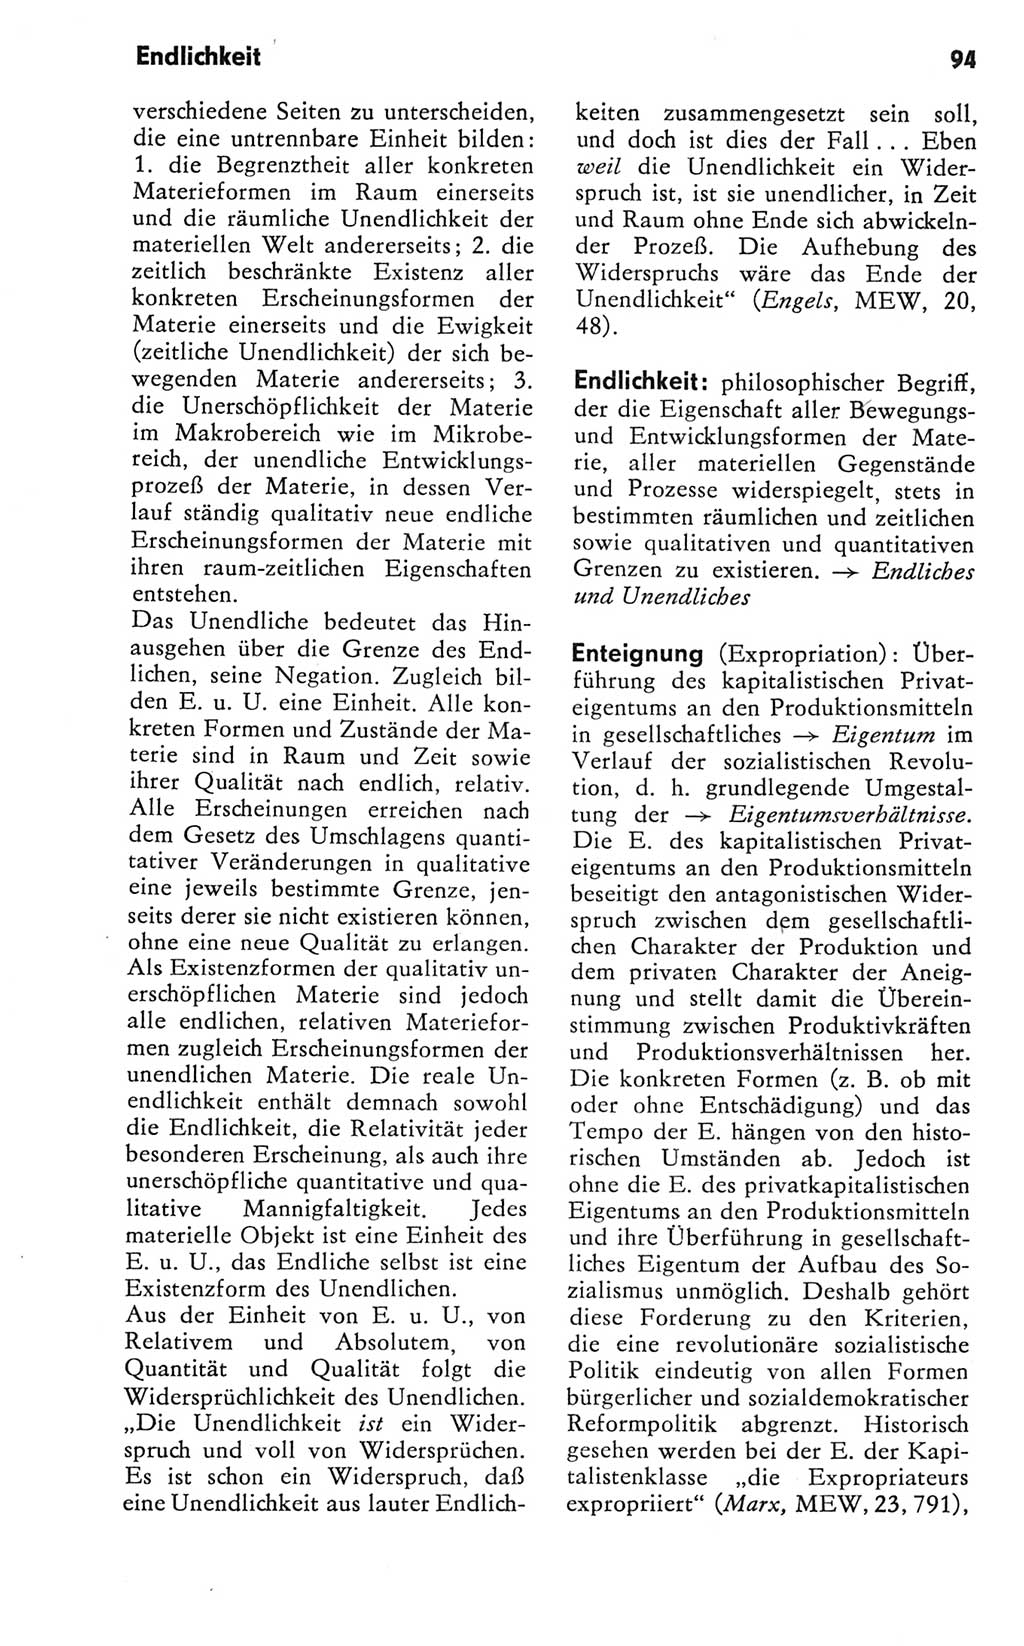 Kleines Wörterbuch der marxistisch-leninistischen Philosophie [Deutsche Demokratische Republik (DDR)] 1981, Seite 94 (Kl. Wb. ML Phil. DDR 1981, S. 94)